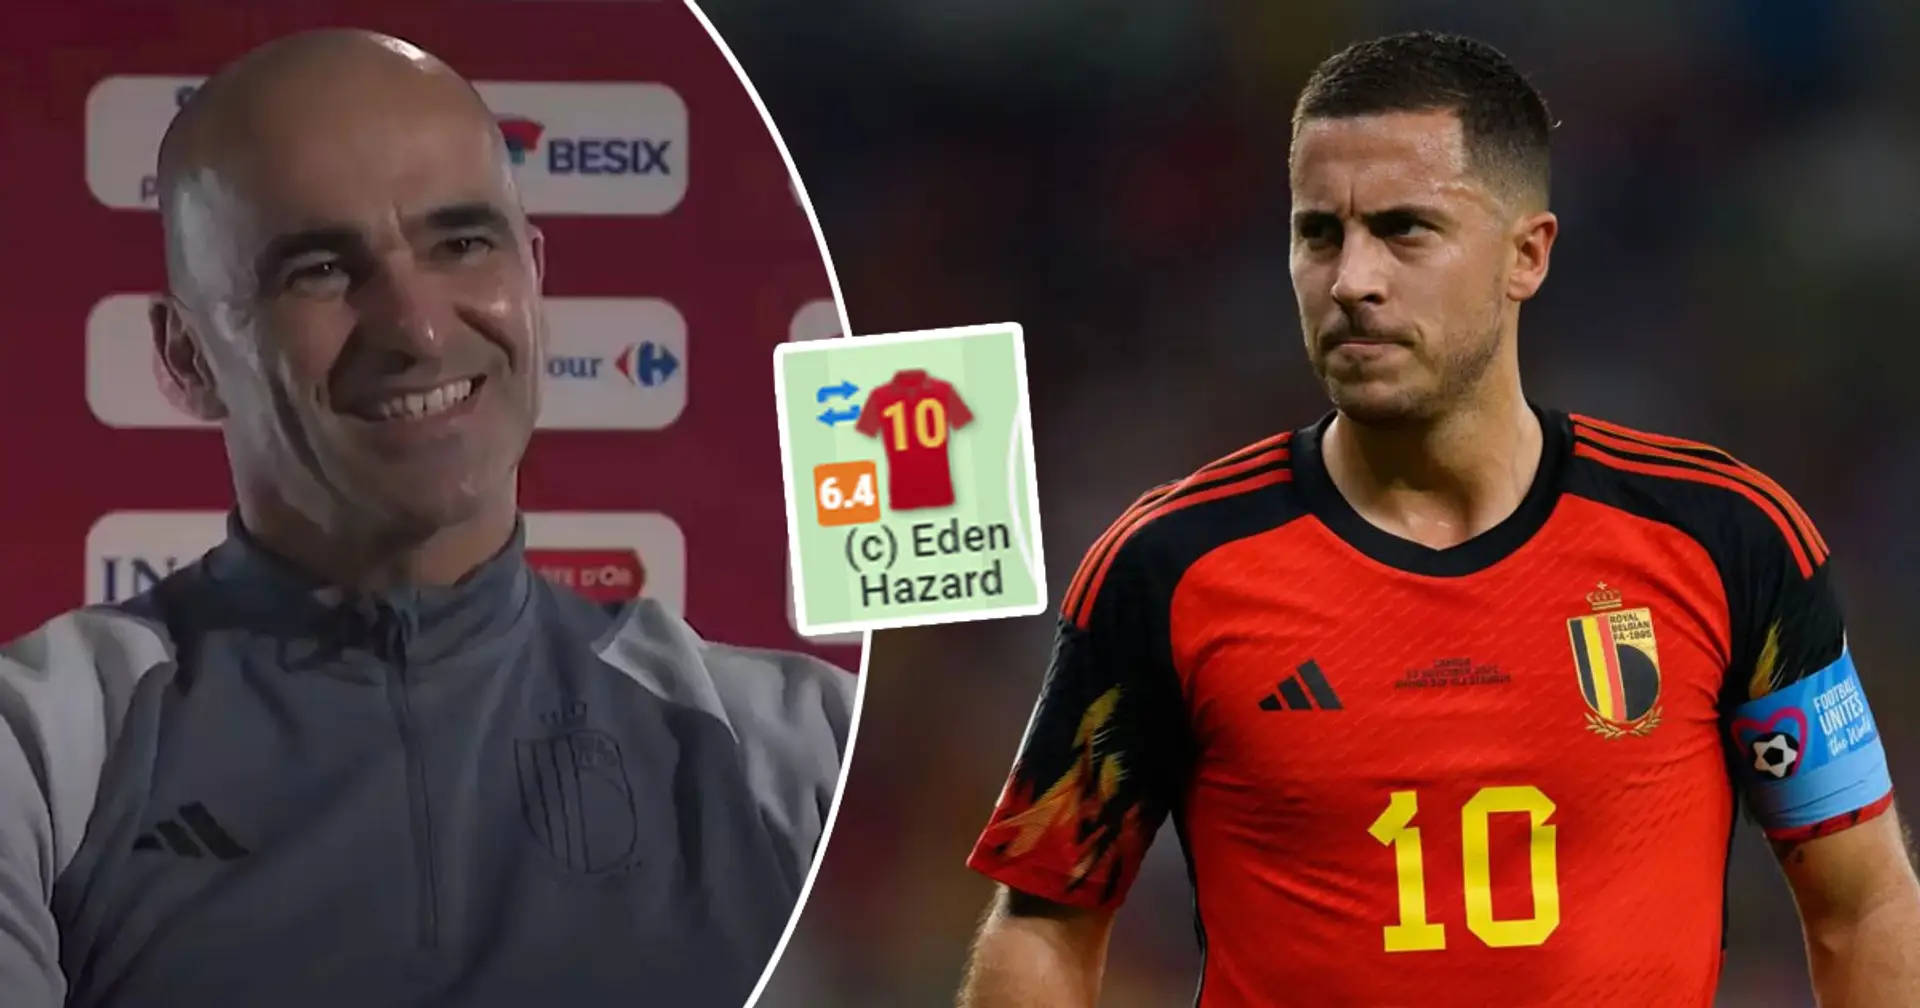 El entrenador de Bélgica elogia a Hazard por el 'gran' partido contra Marruecos: las estadísticas sugieren que no fue nada especial